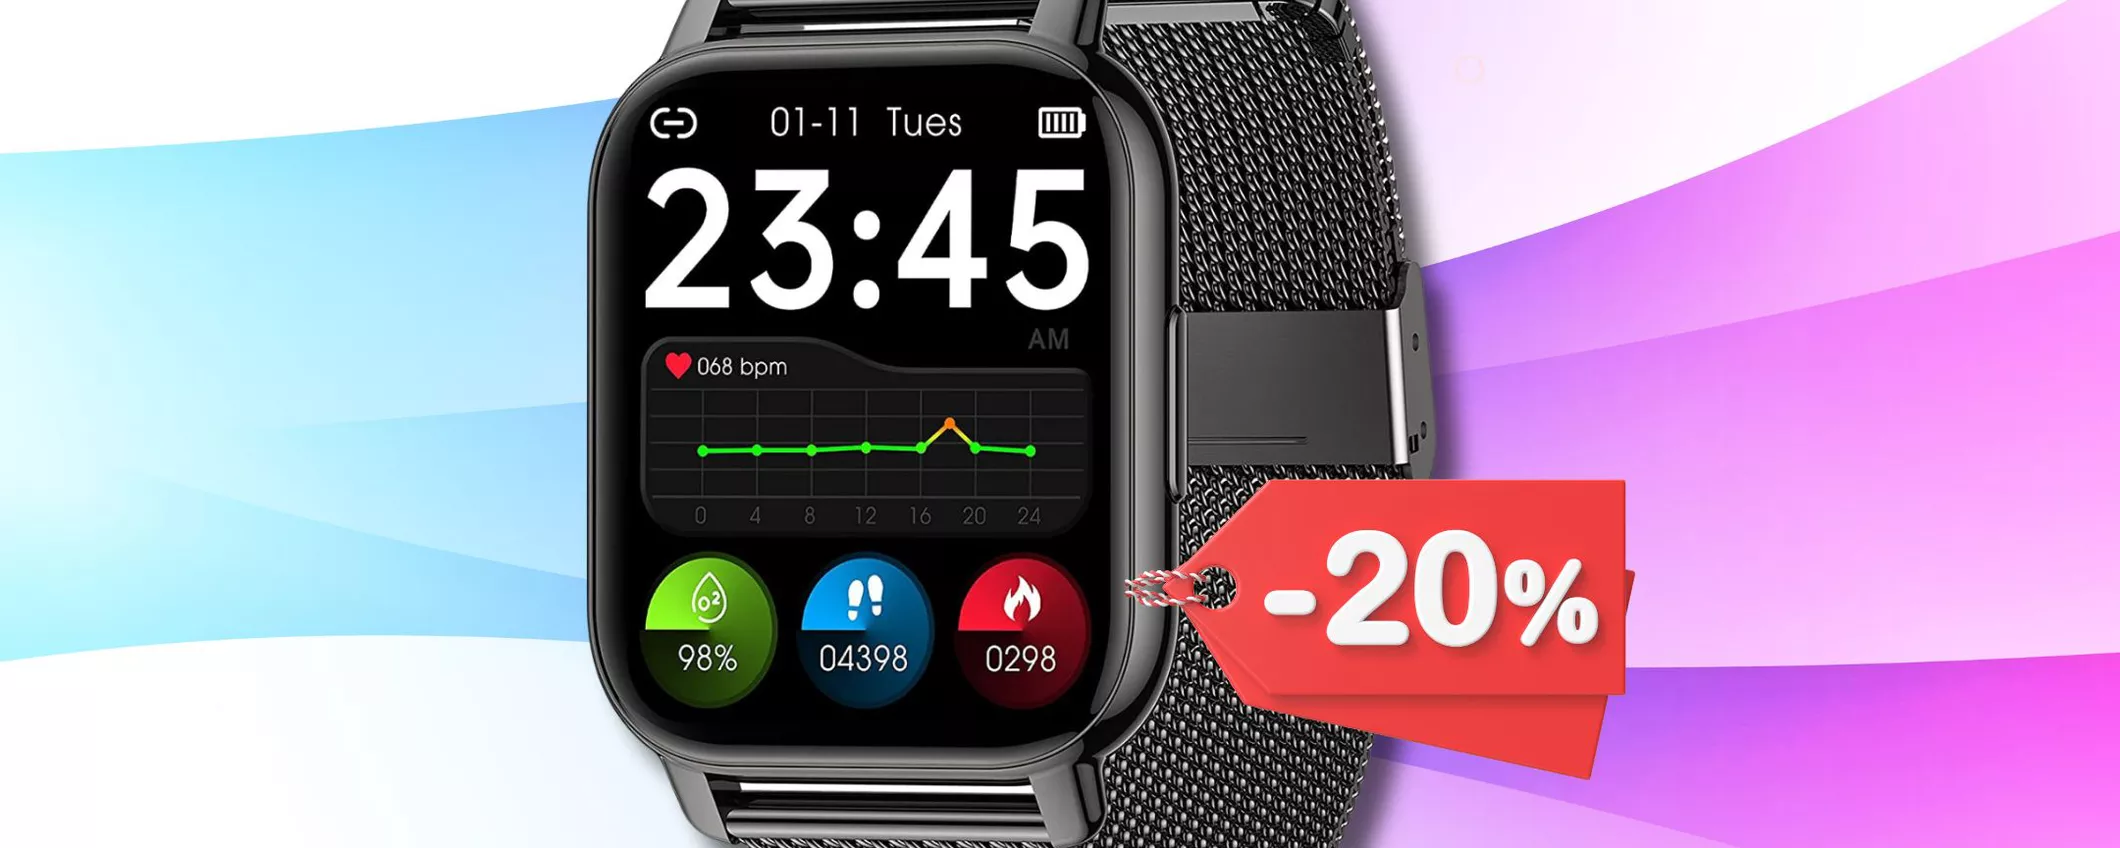 Smartwatch compatibile iOS con 2 cinturini a soli 39€: OCCASIONE UNICA